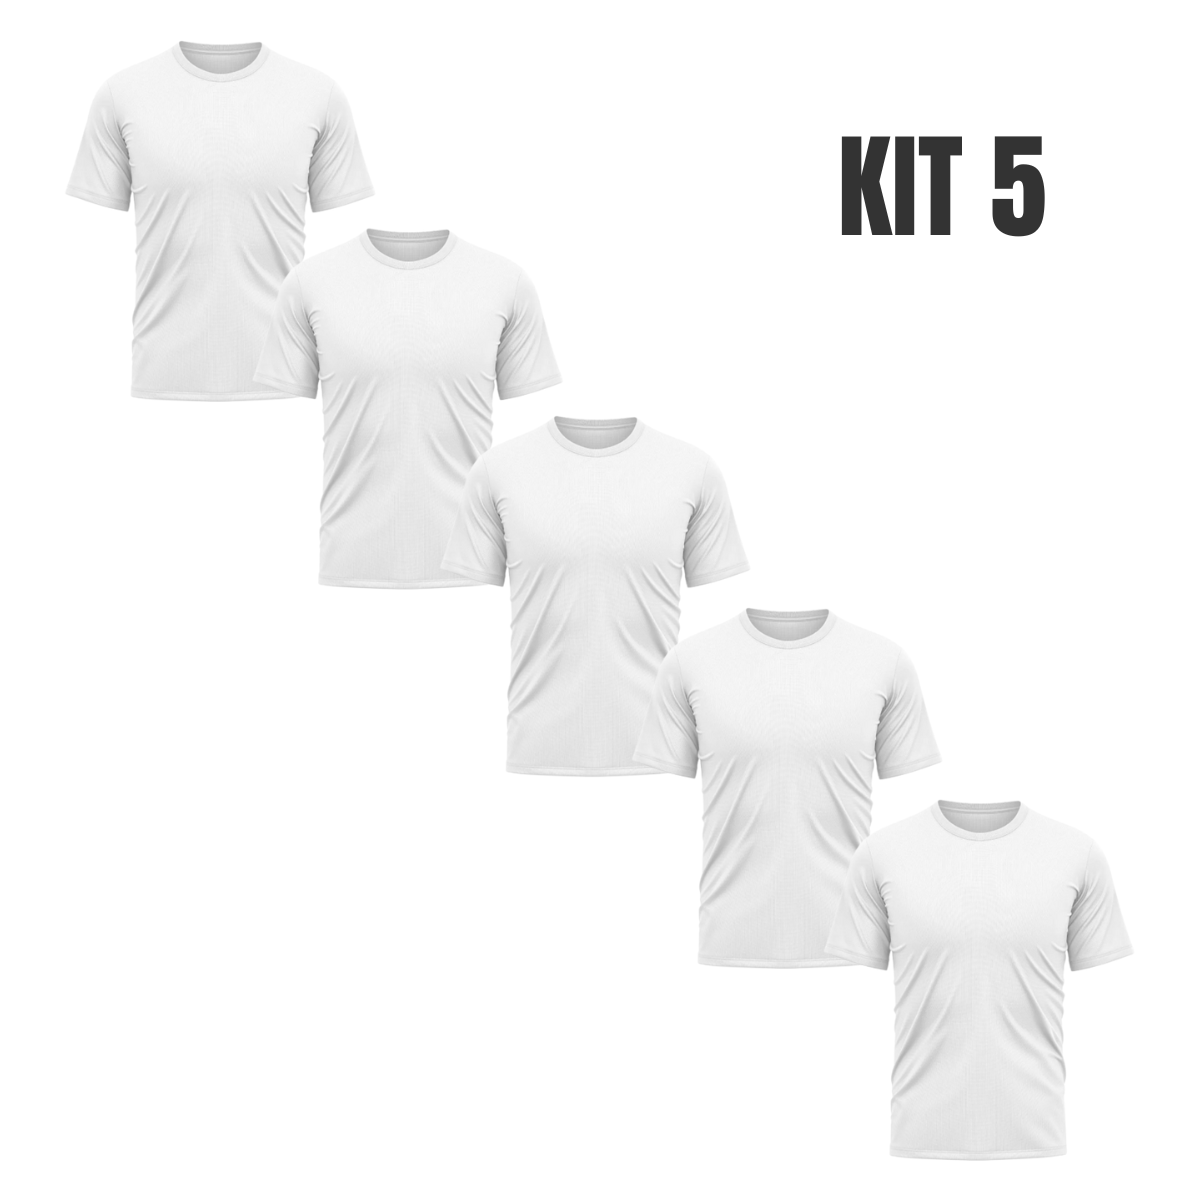 kit 5 camisas térmicas com proteção uv manga curta branca